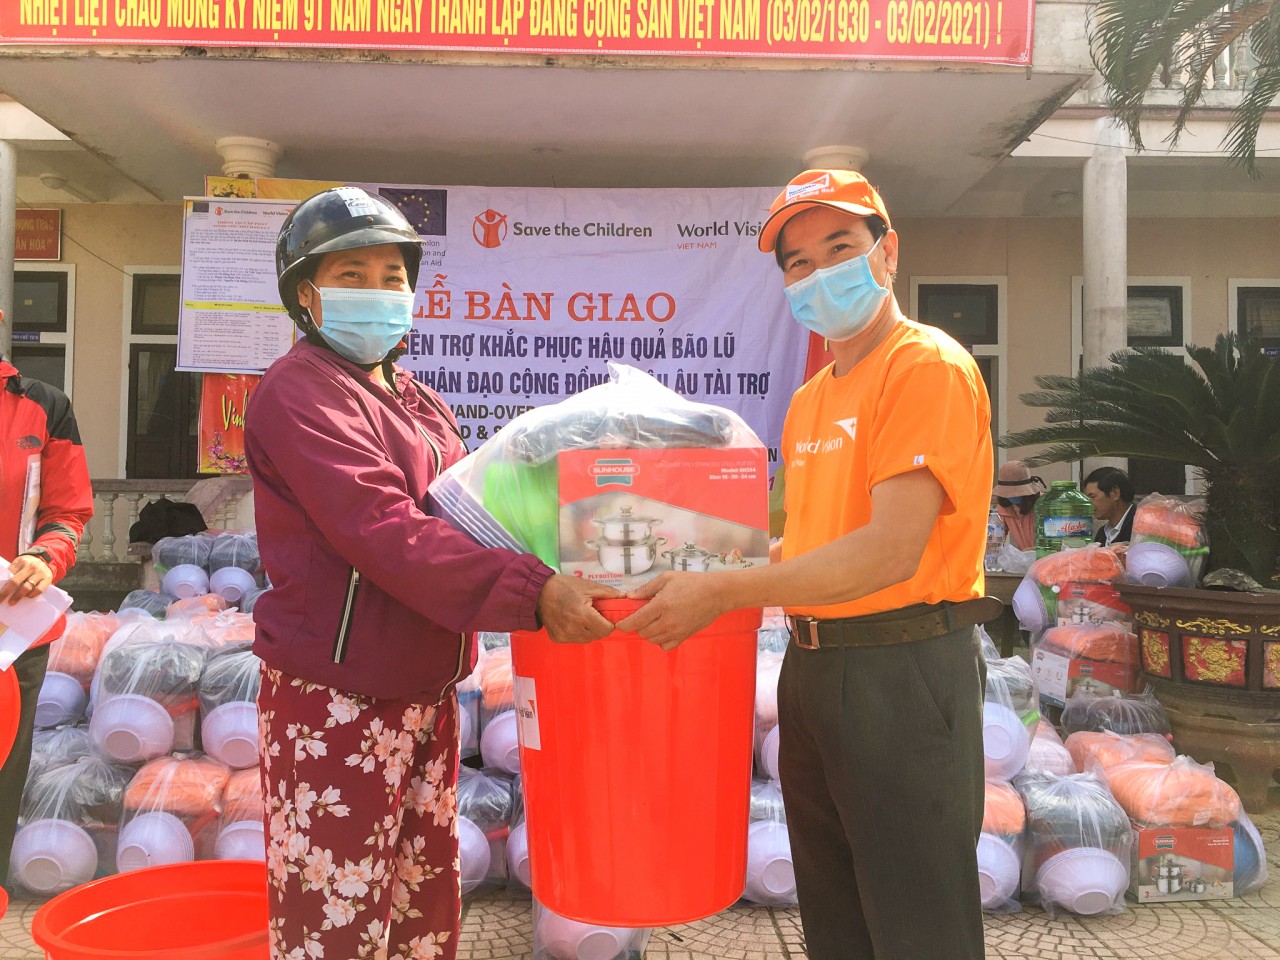 Những hỗ trợ kịp thời của World Vision Việt Nam đã góp phần giúp người dân mau chóng ổn định cuộc sống sau thiên tai (ảnh chụp tại huyện Hải Lăng - tỉnh Quảng Trị).